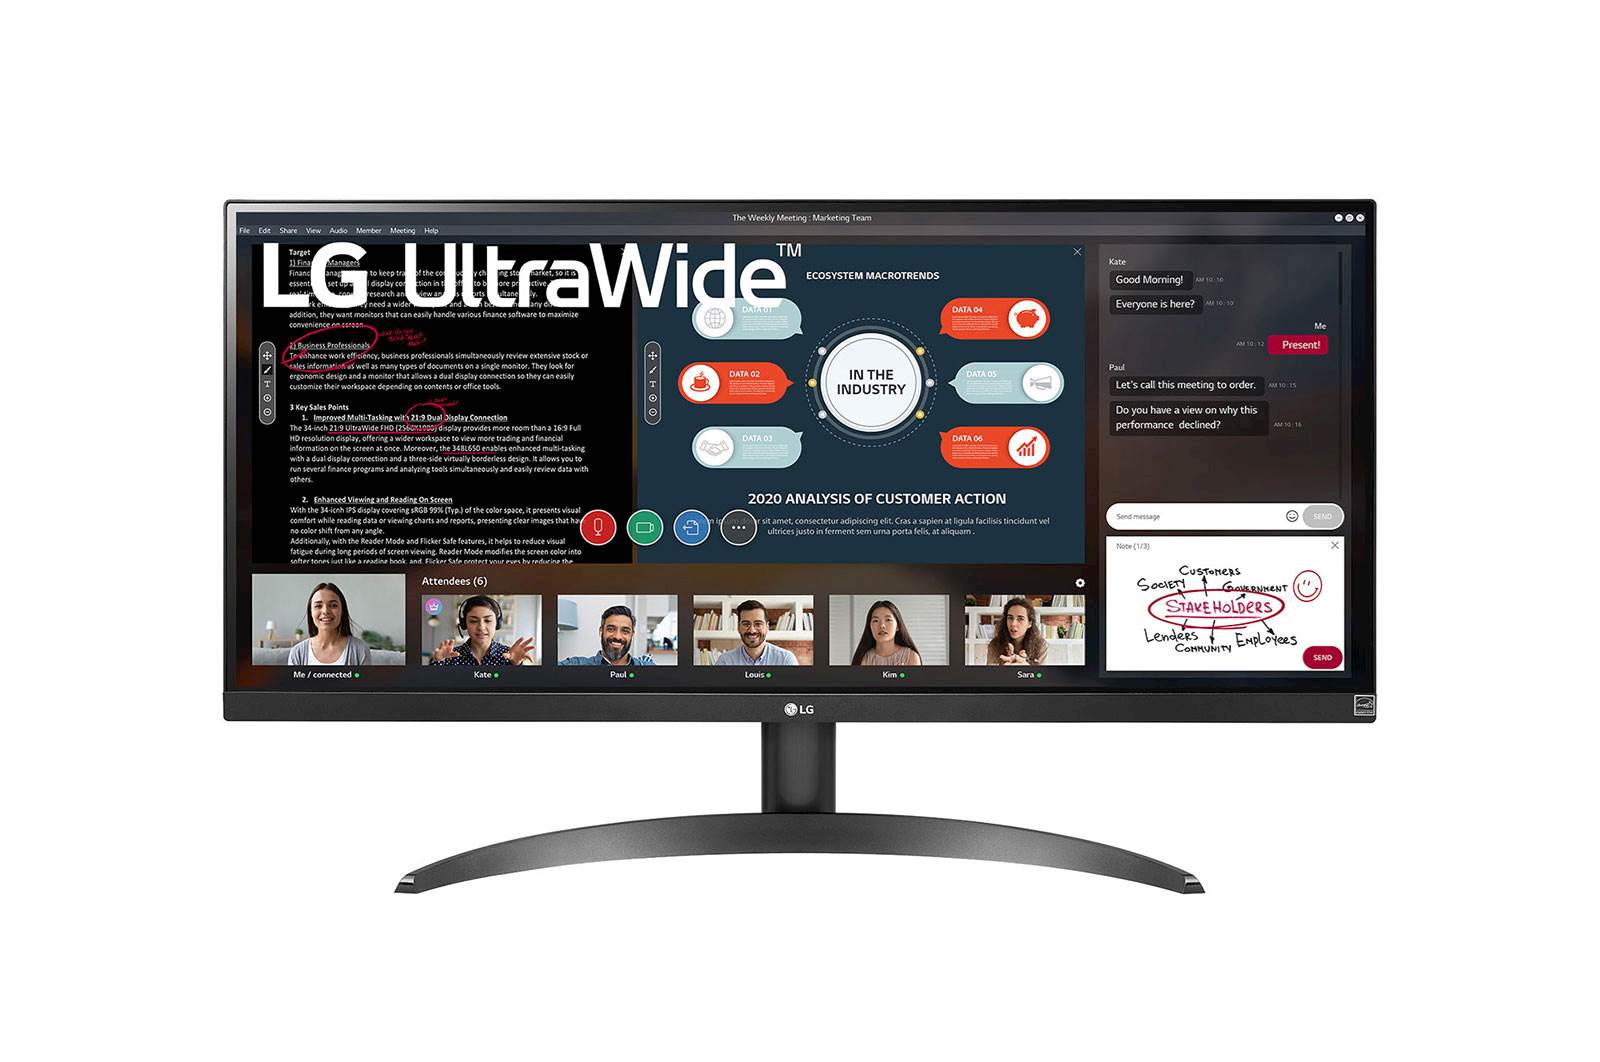 Monitor LG 29WP500-B